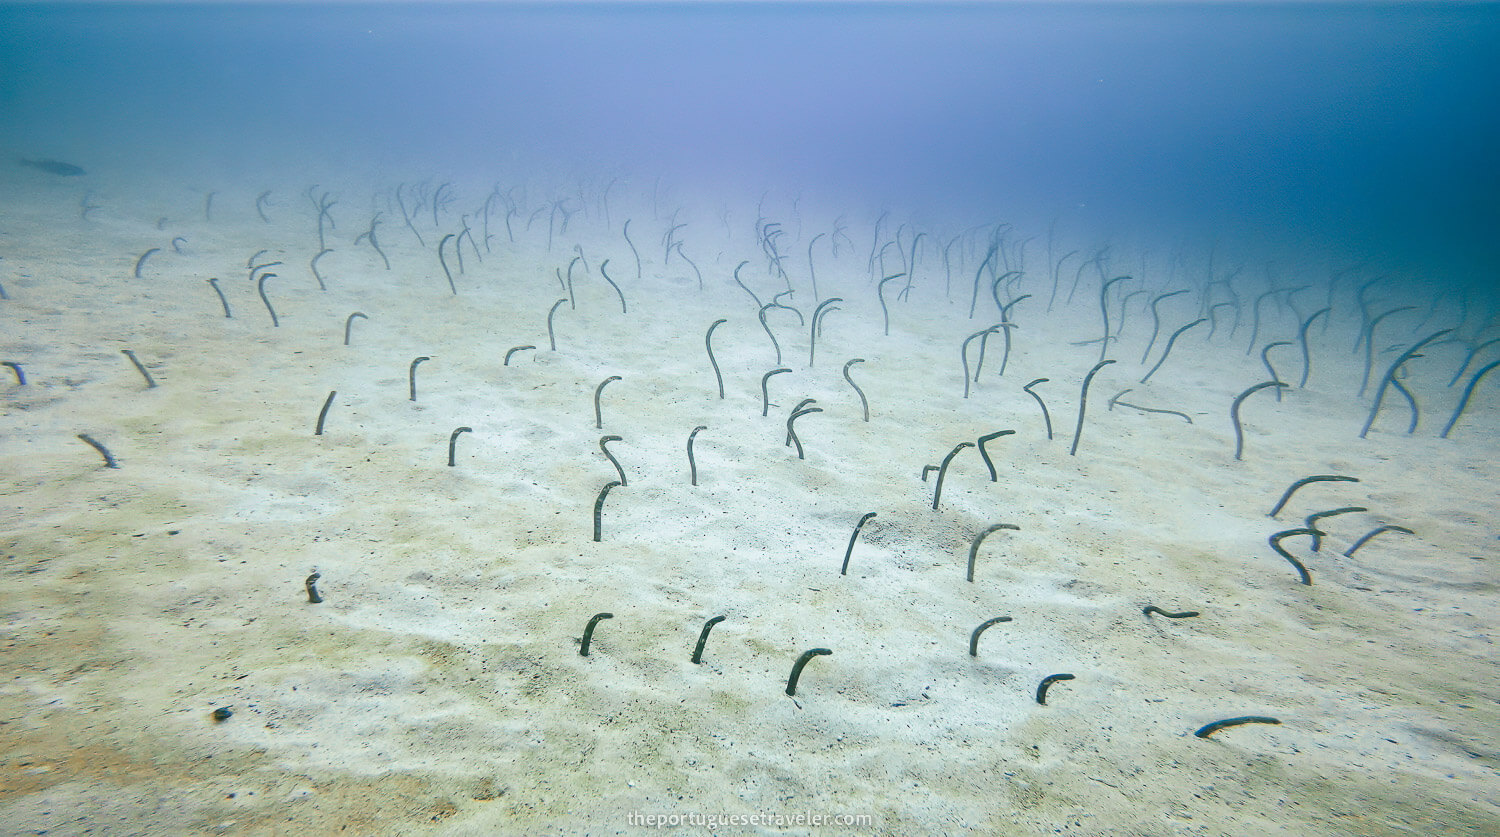 A garden of eels in North Seymour dive site north of Santa Cruz, Galápagos